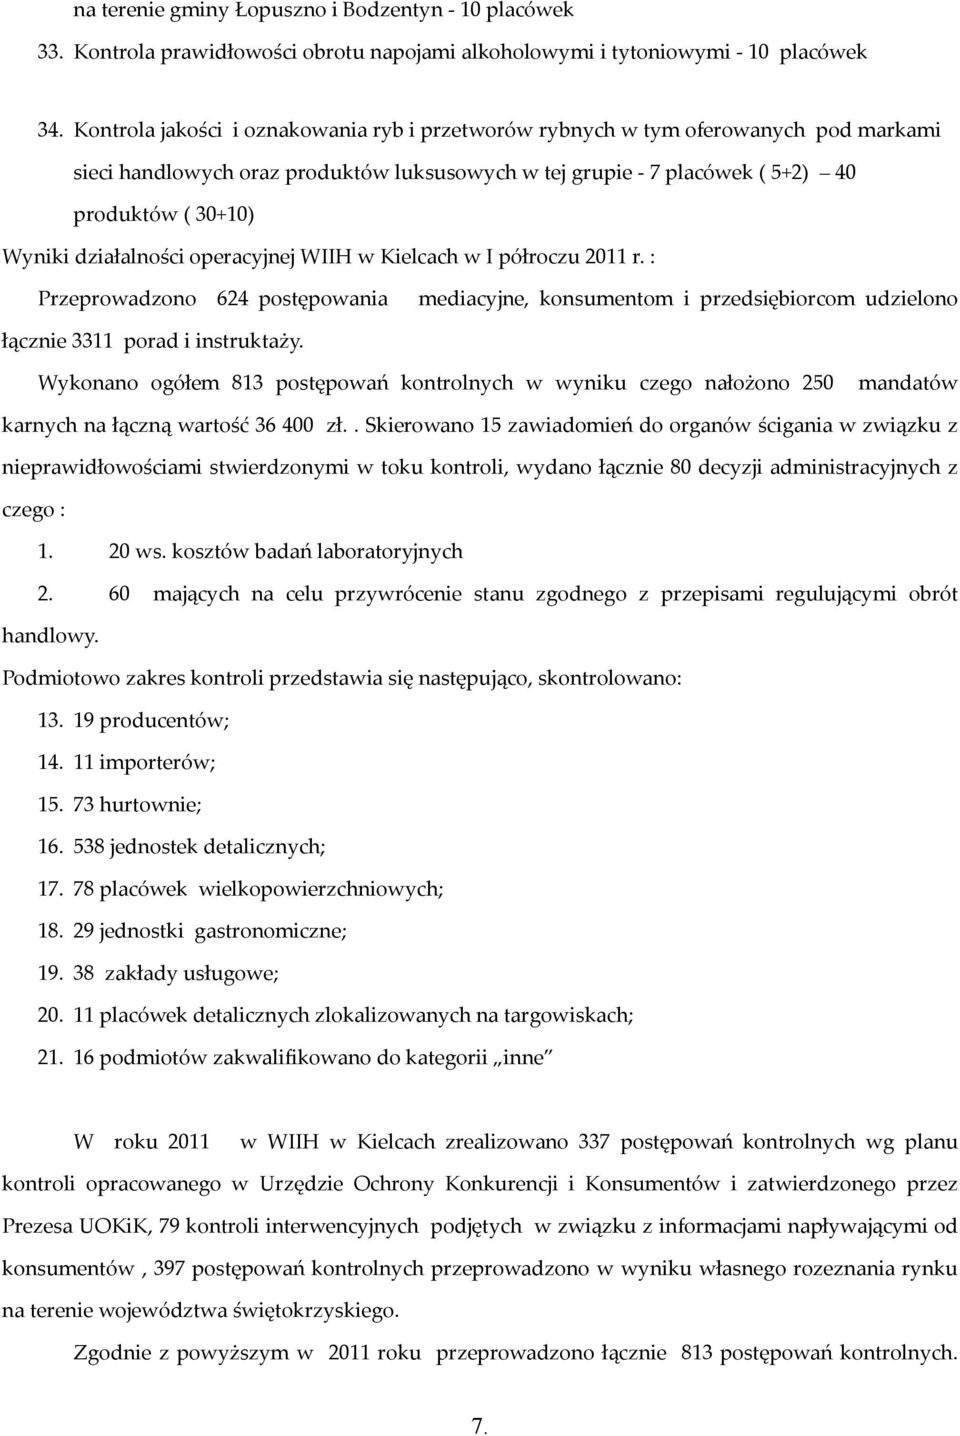 działalności operacyjnej WIIH w Kielcach w I półroczu 2011 r. : Przeprowadzono 624 postępowania mediacyjne, konsumentom i przedsiębiorcom udzielono łącznie 3311 porad i instruktaży.